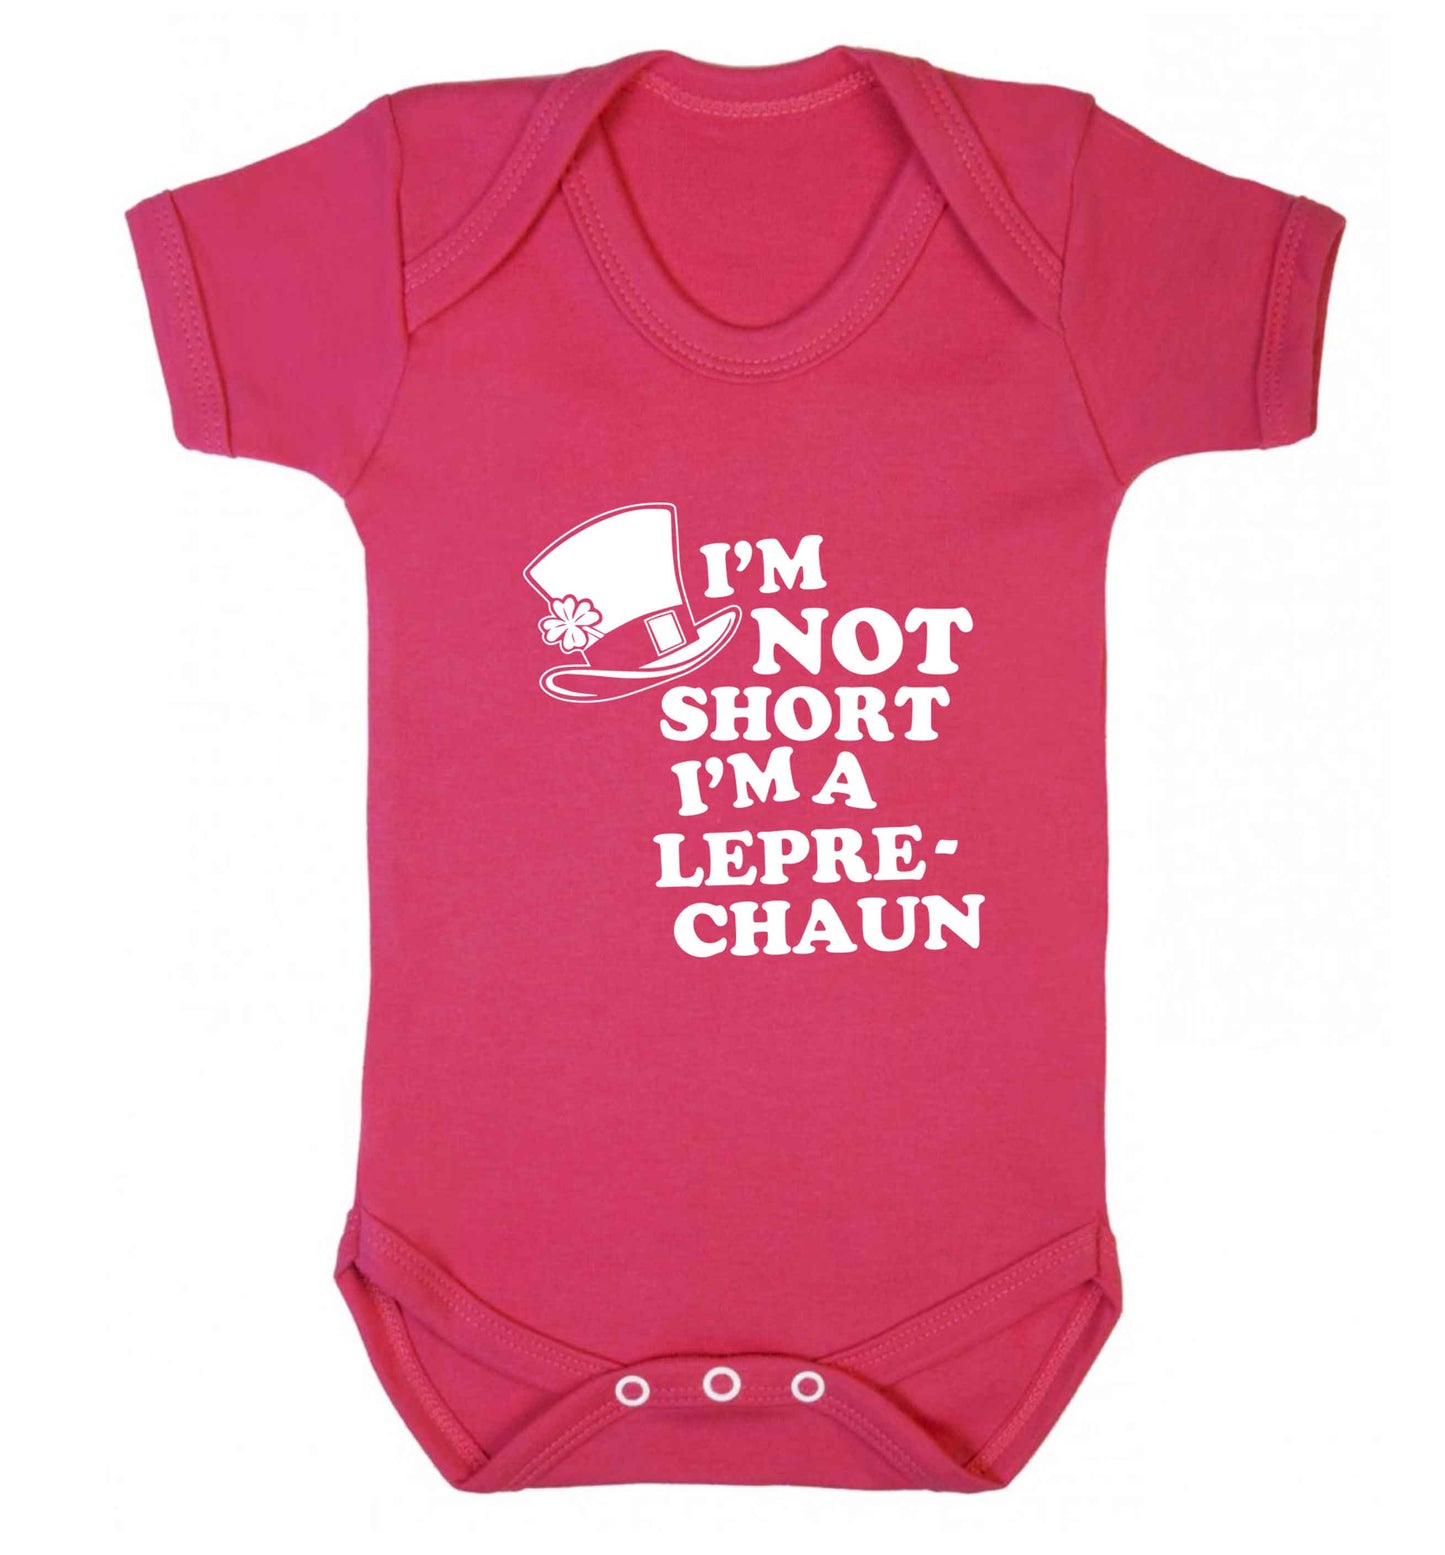 I'm not short I'm a leprechaun baby vest dark pink 18-24 months